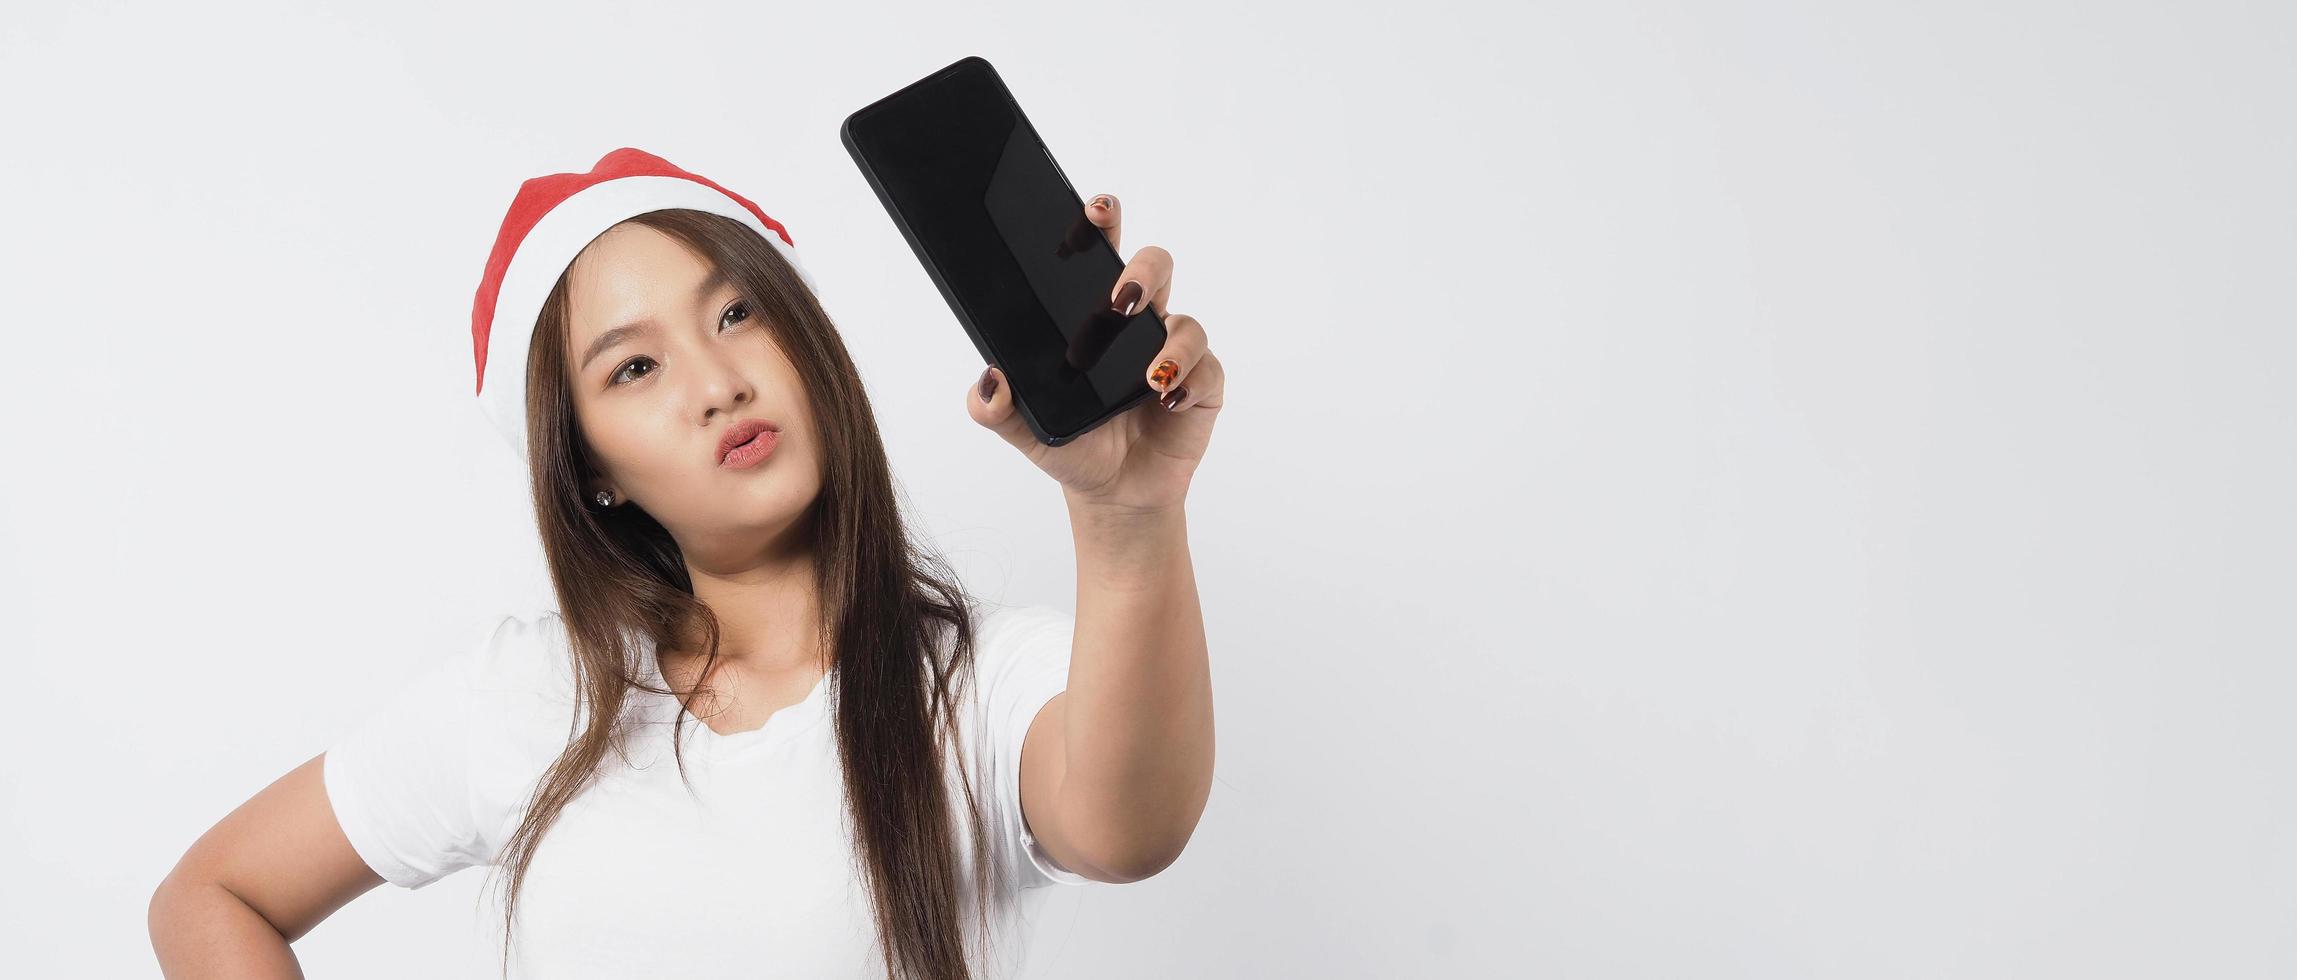 Aziatische vrouw met smartphone in de hand die zich voordeed als selfie of videogesprek foto